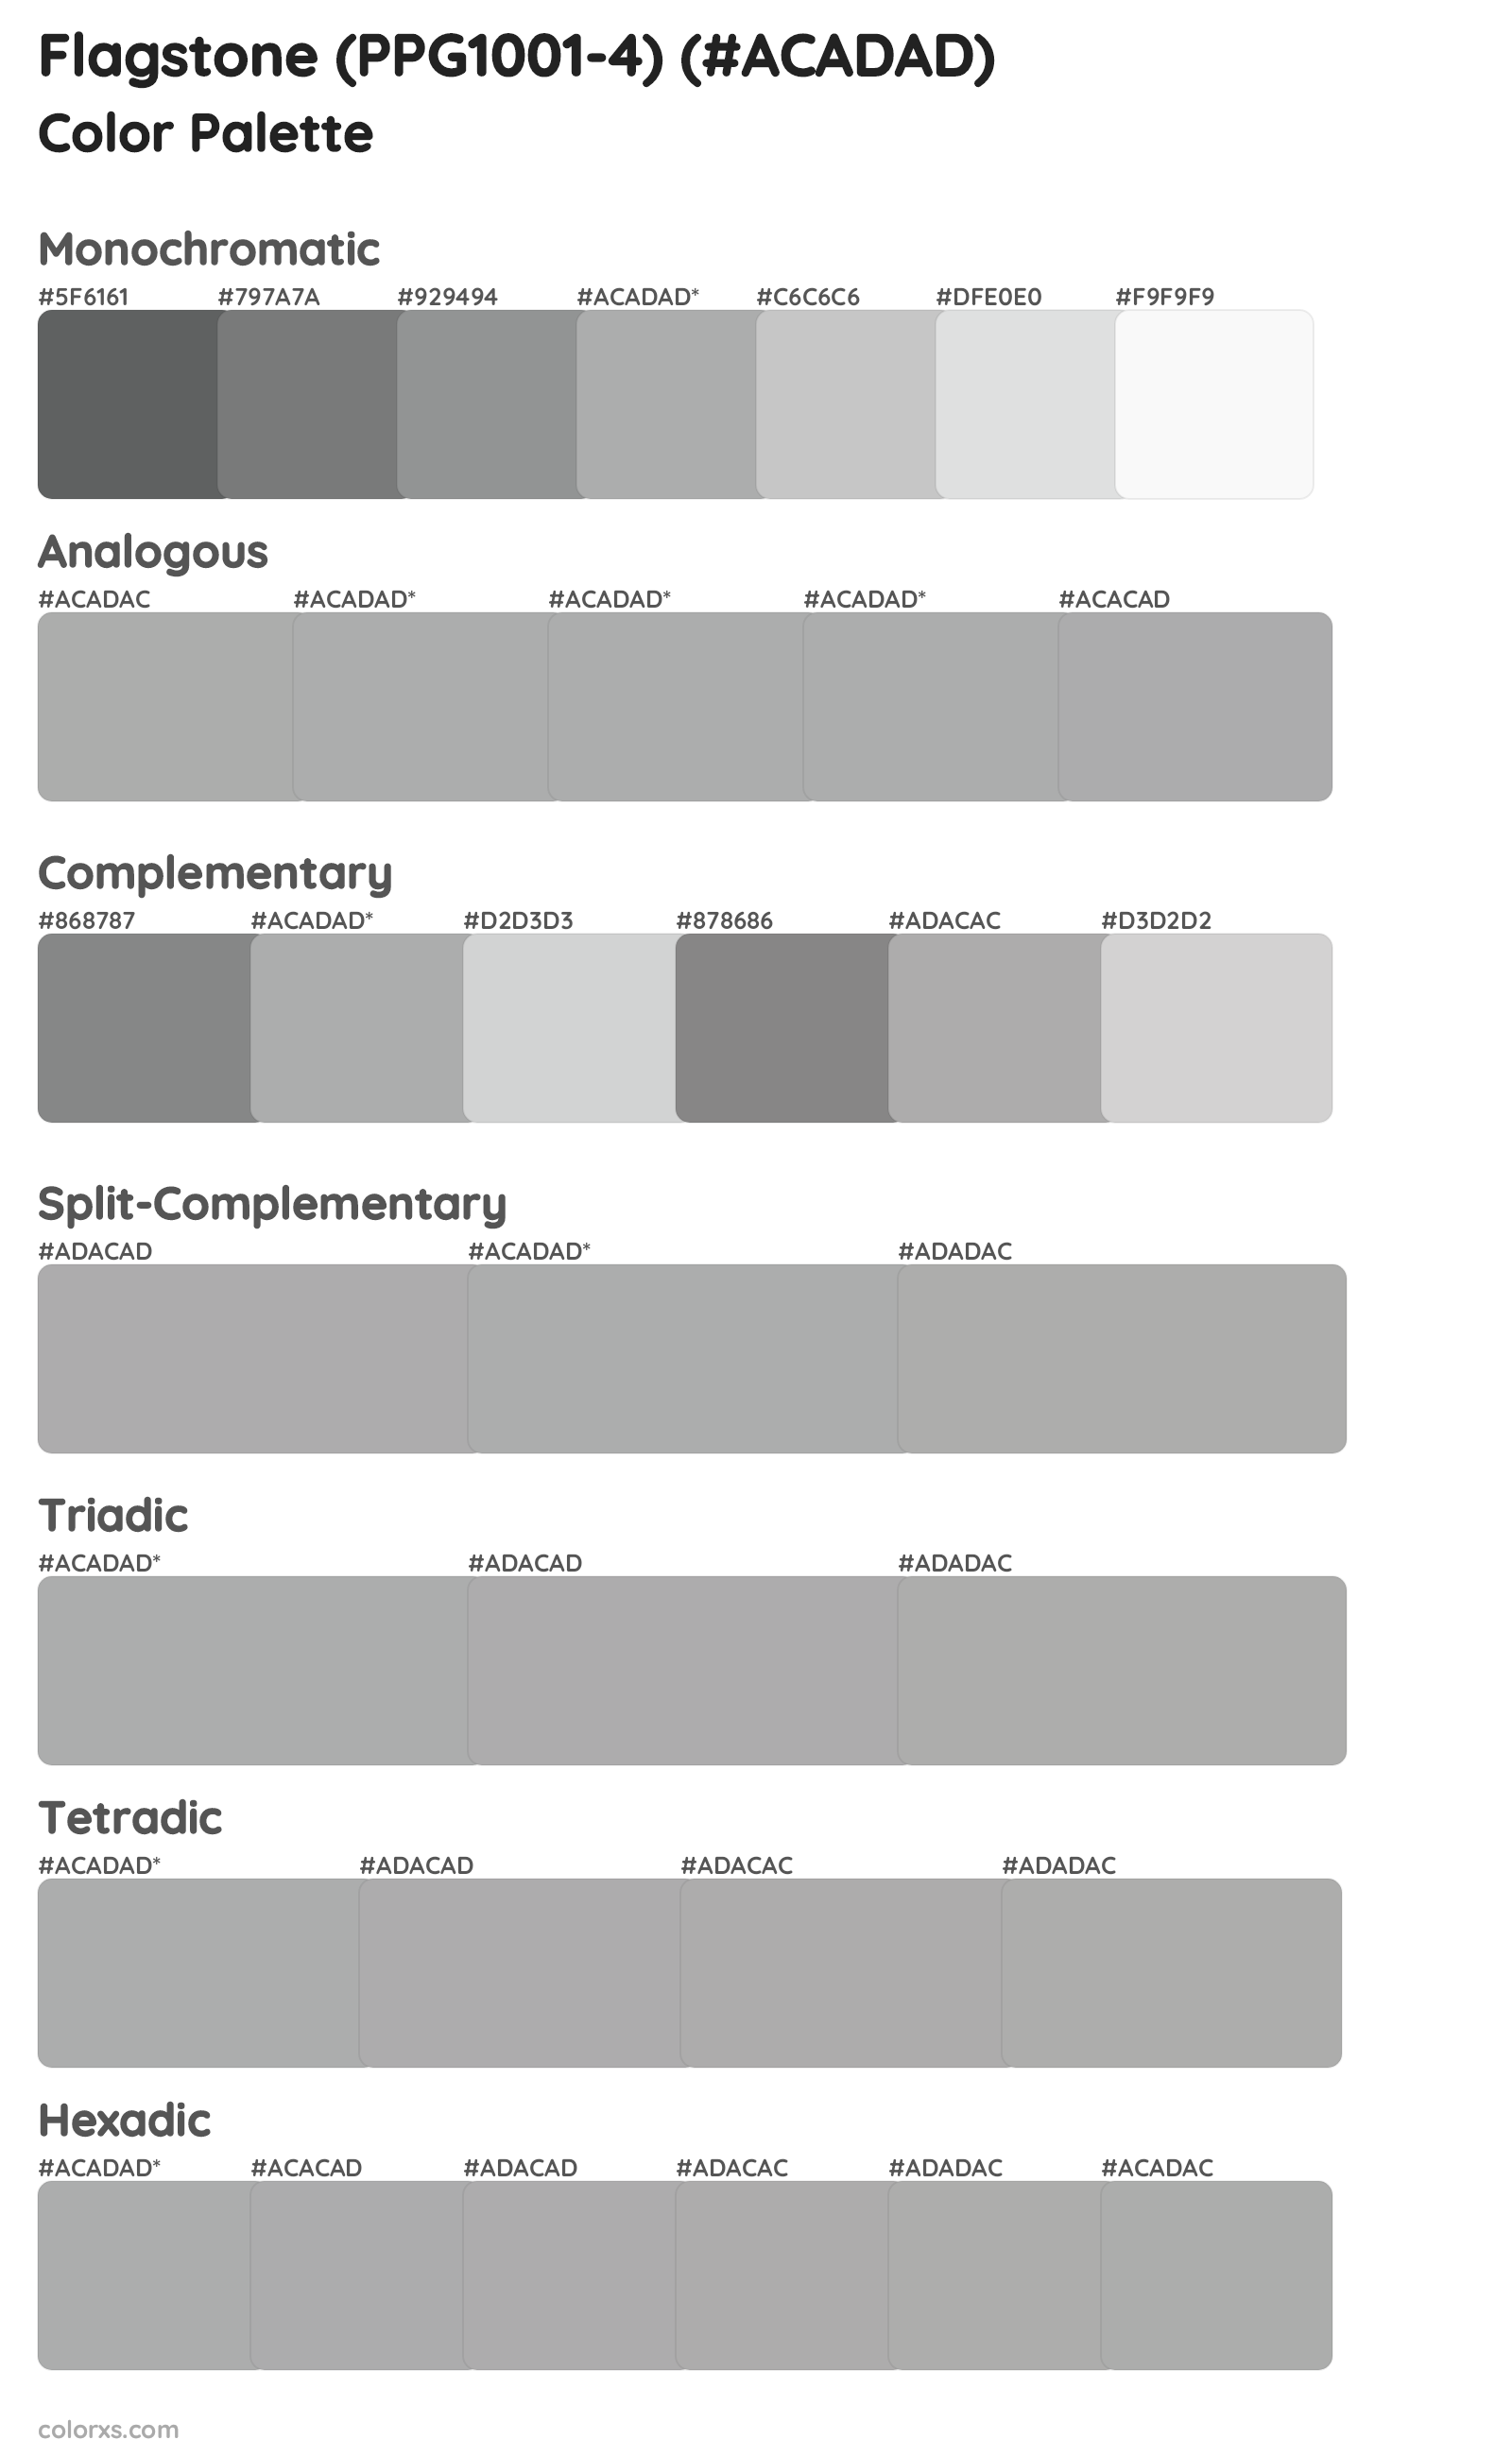 Flagstone (PPG1001-4) Color Scheme Palettes